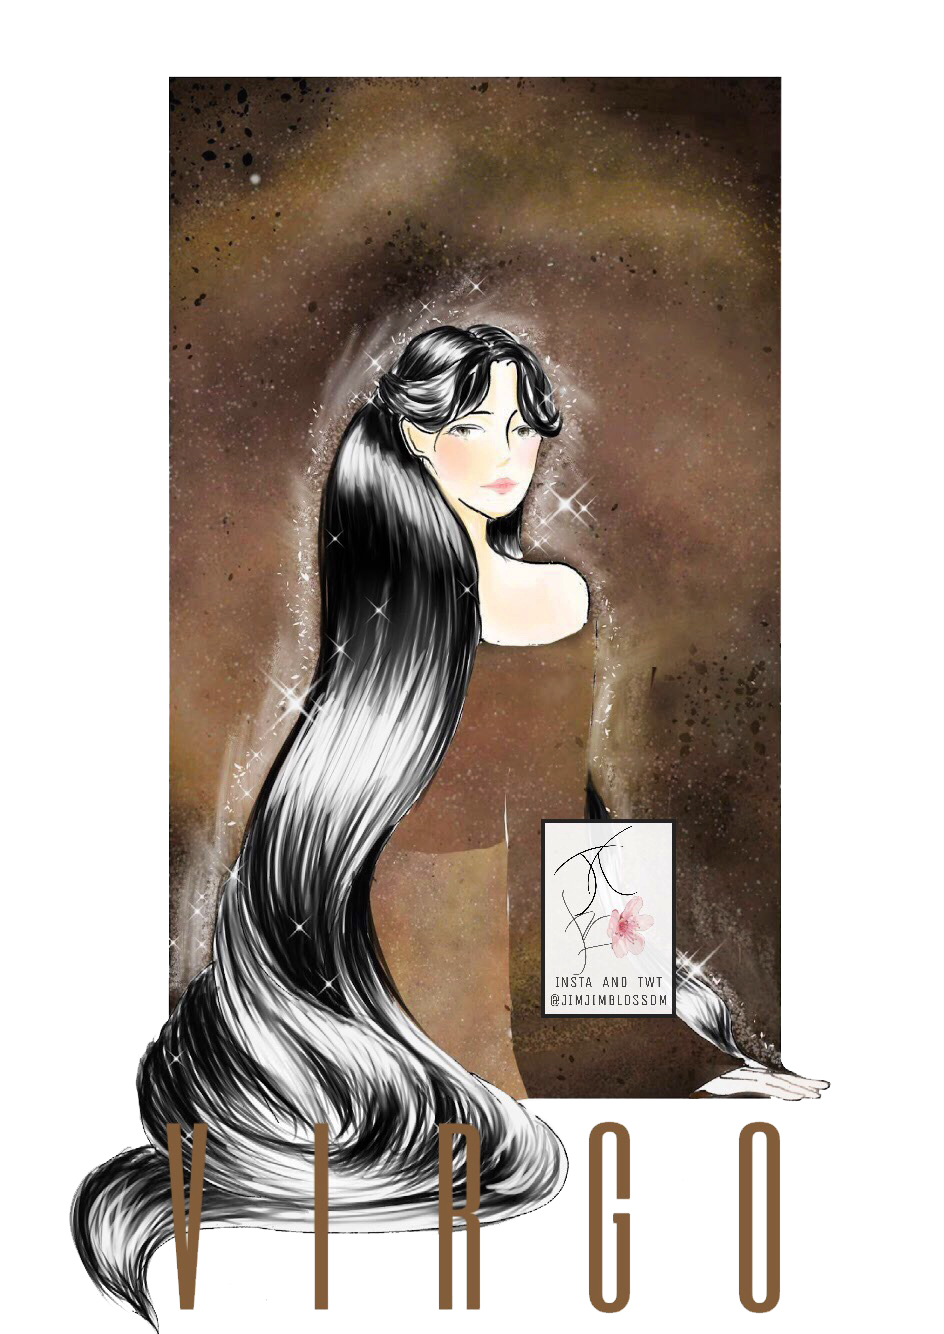 Cung hoàng đạo Xử Nữ với hình ảnh cô gái tóc dài